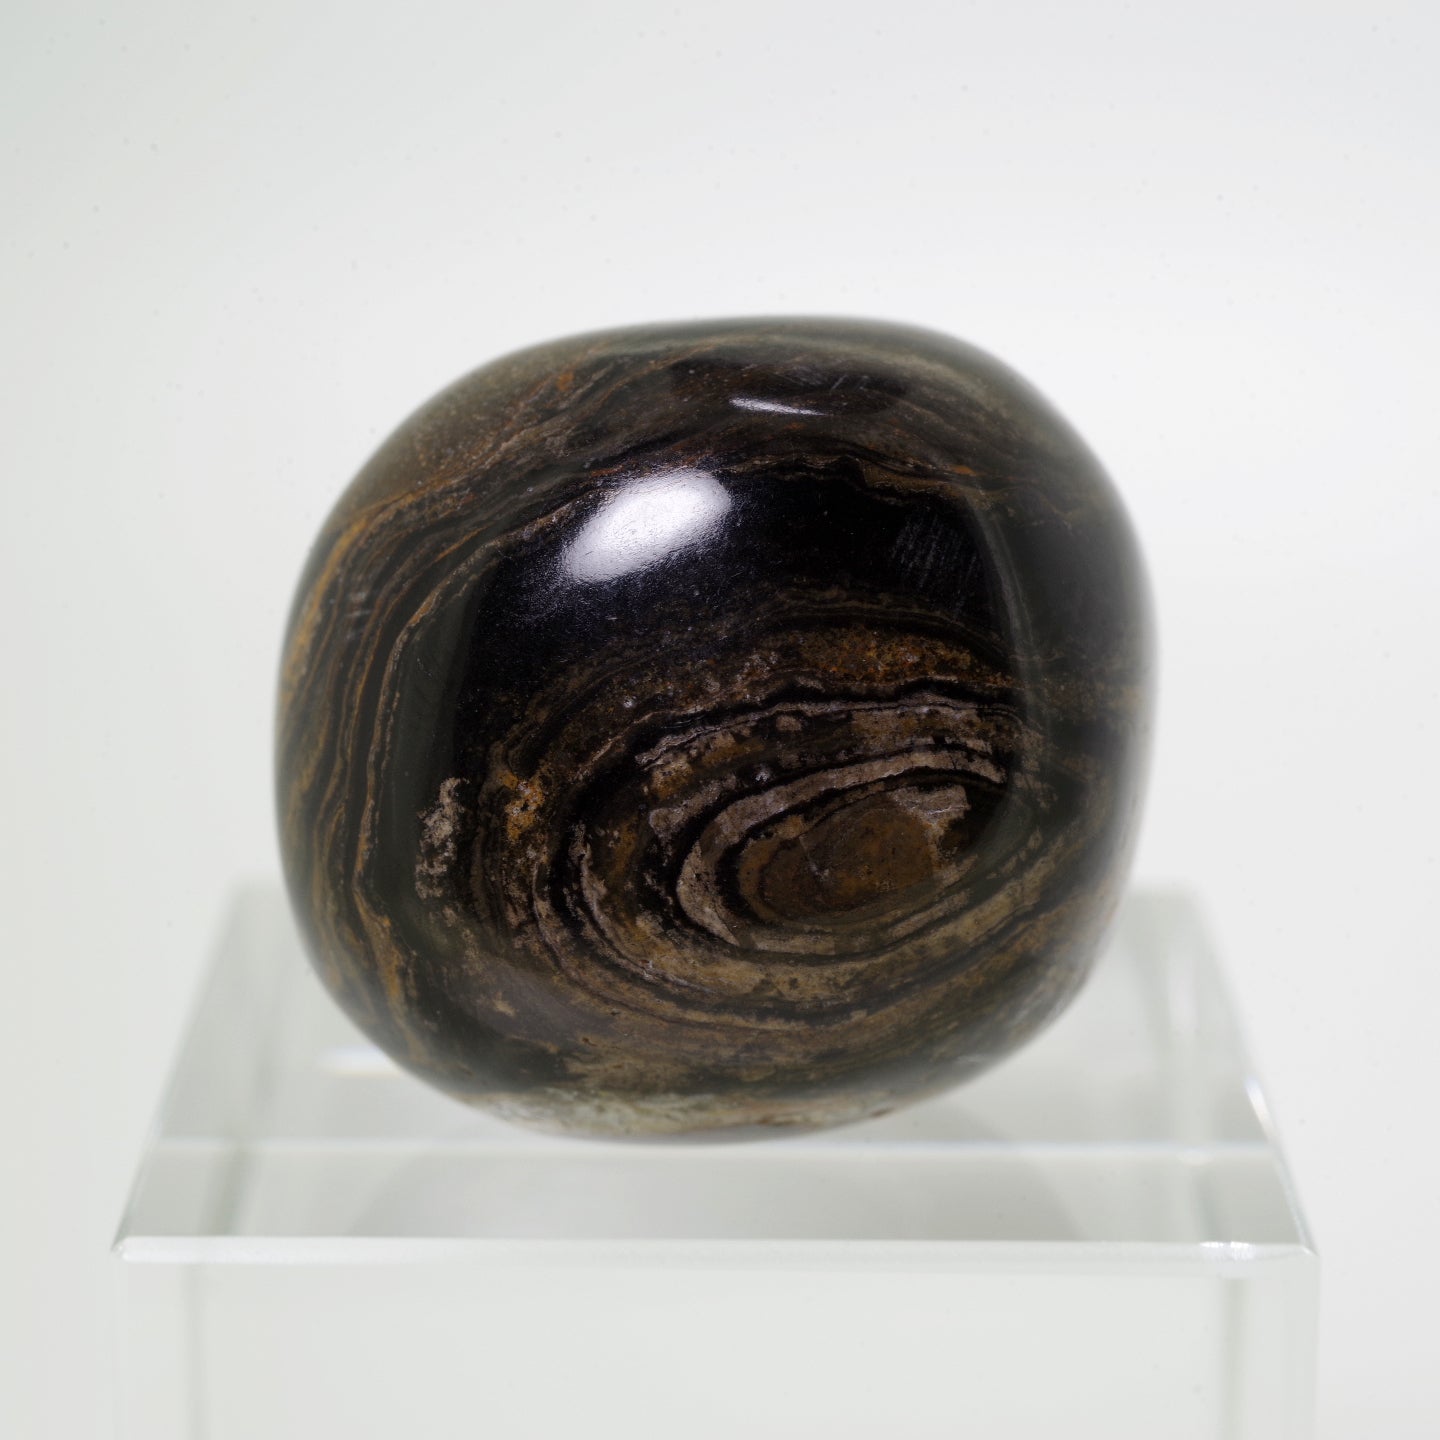 ストロマトライト1 ボリビア産  Stromatolite Bolivia 写真現物 動画あり